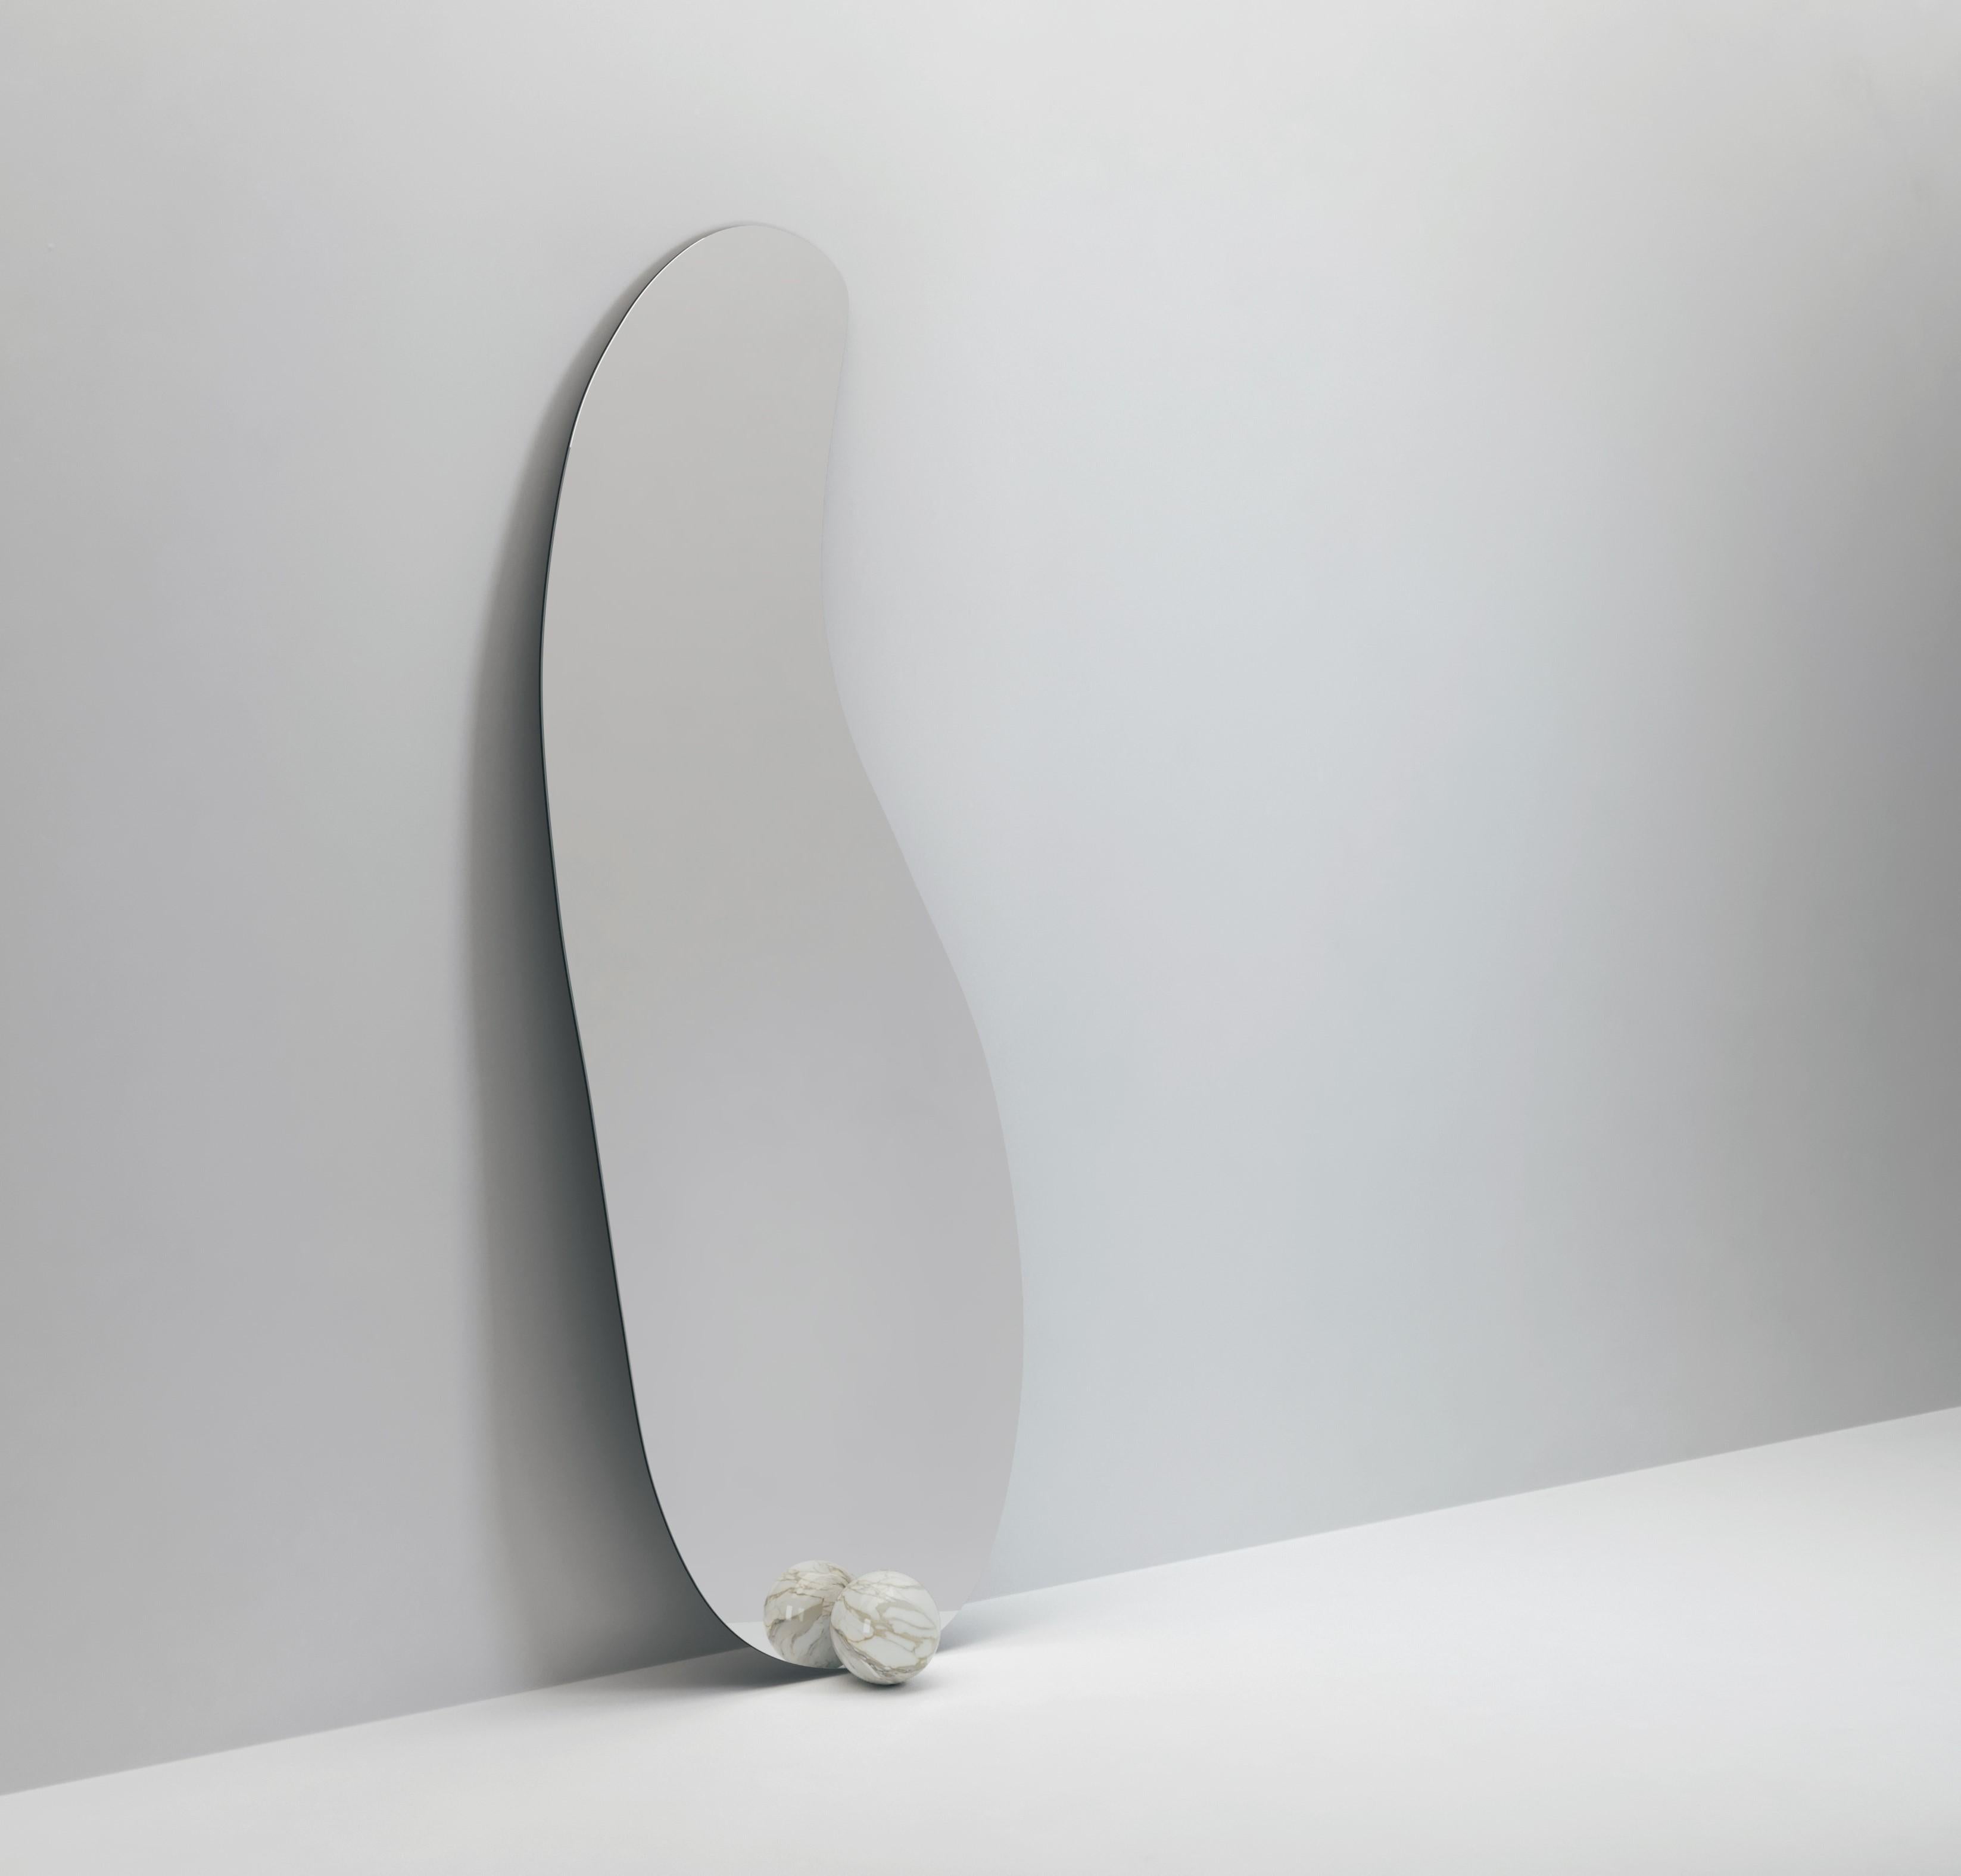 Inspiriert von der Ästhetik und dem Surrealismus Salvador Dalis, ist der 1931 ein amorpher Spiegel, der scheinbar nur von einer Marmorkugel gehalten wird. Erhältlich in einer Vielzahl von verschiedenen Steinen und Metalloberflächen.

Abmessungen: